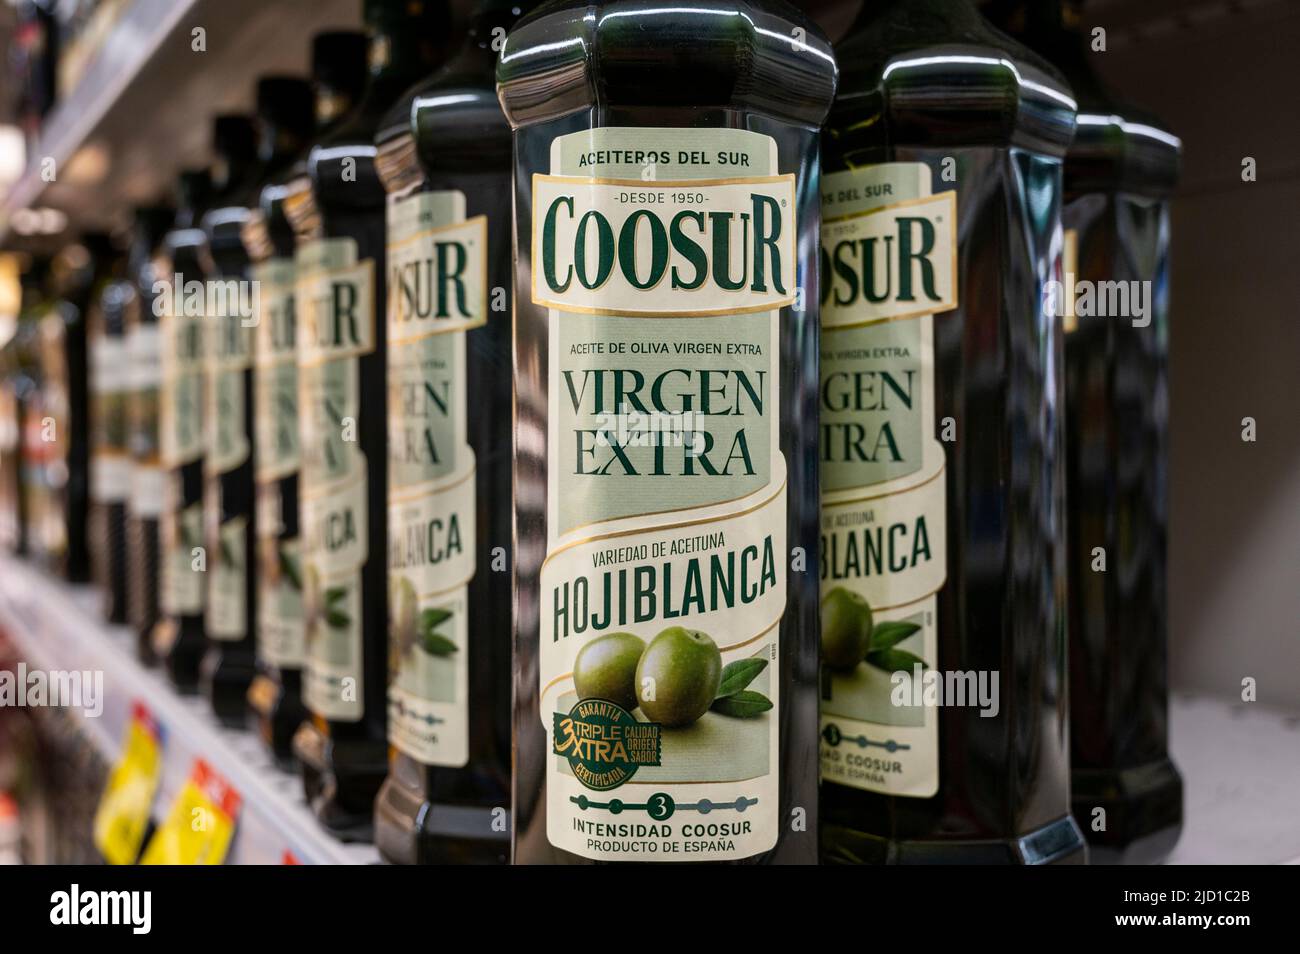 Flasche spanisches Olivenöl extra-Virgin Coosur Marke zum Verkauf in einem  Carrefour Supermarkt in Spanien gesehen Stockfotografie - Alamy